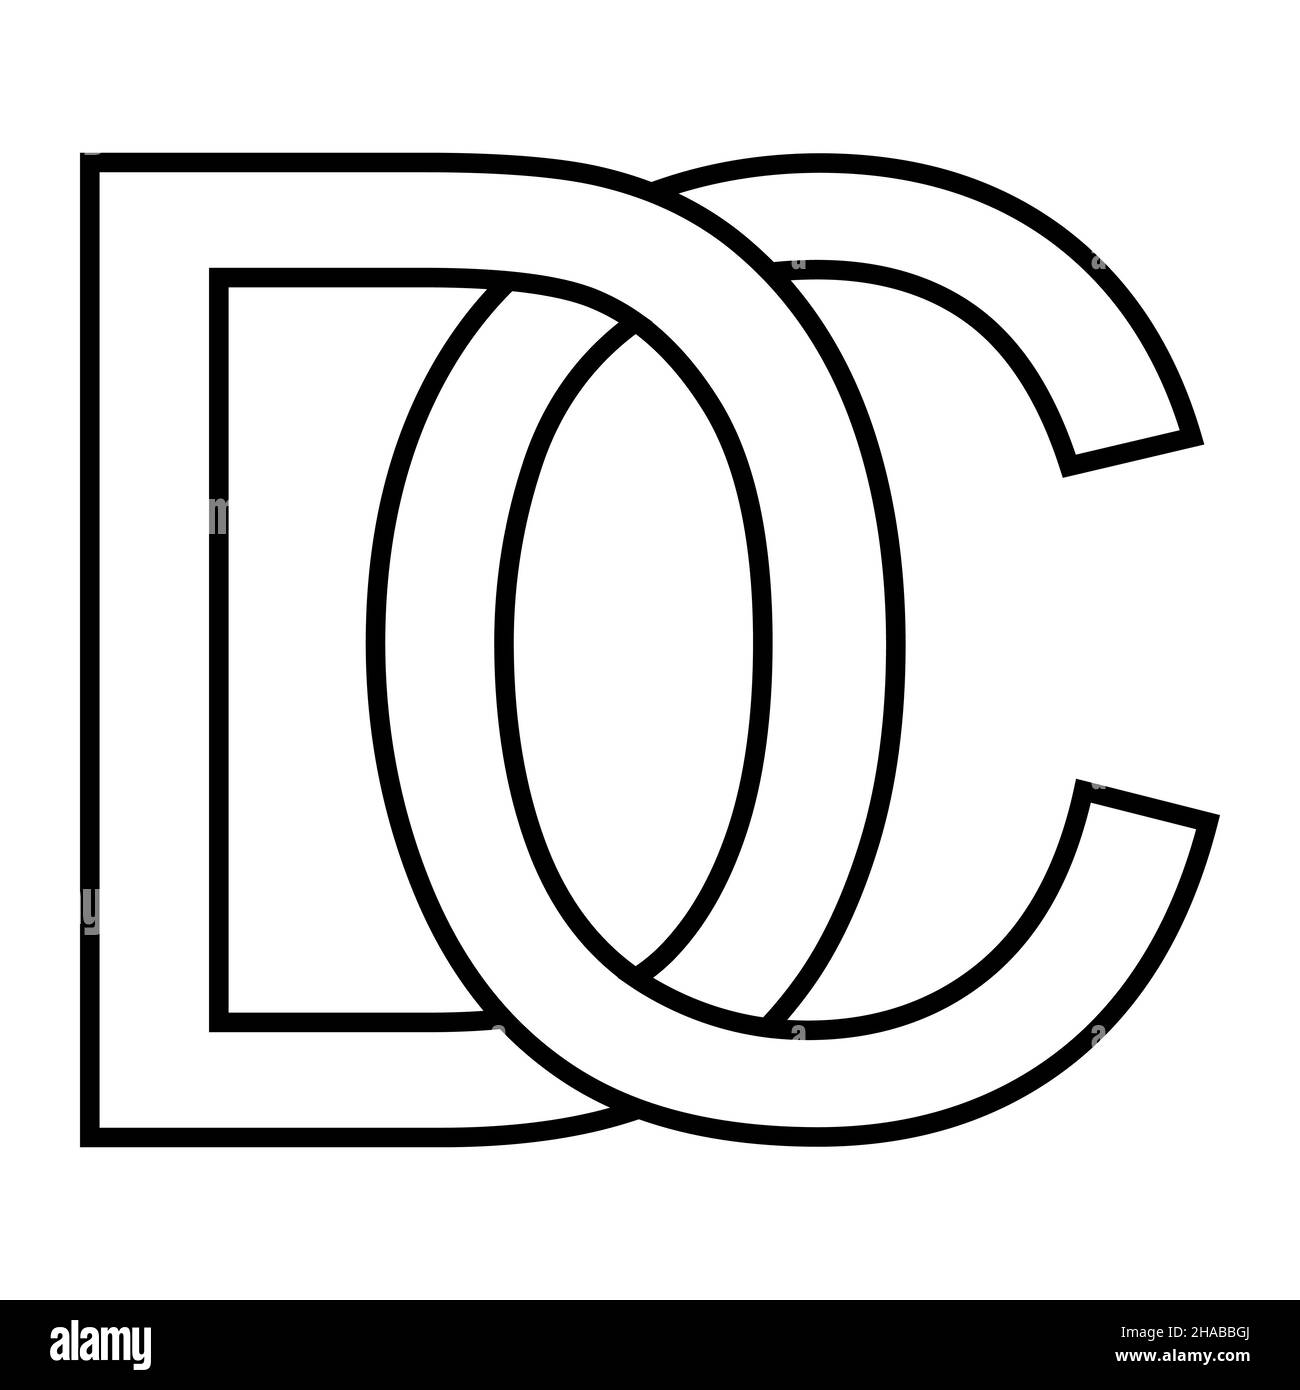 Logo-Zeichen dc-cd, Symbolzeichen Interlaced, Buchstaben d c Stock Vektor